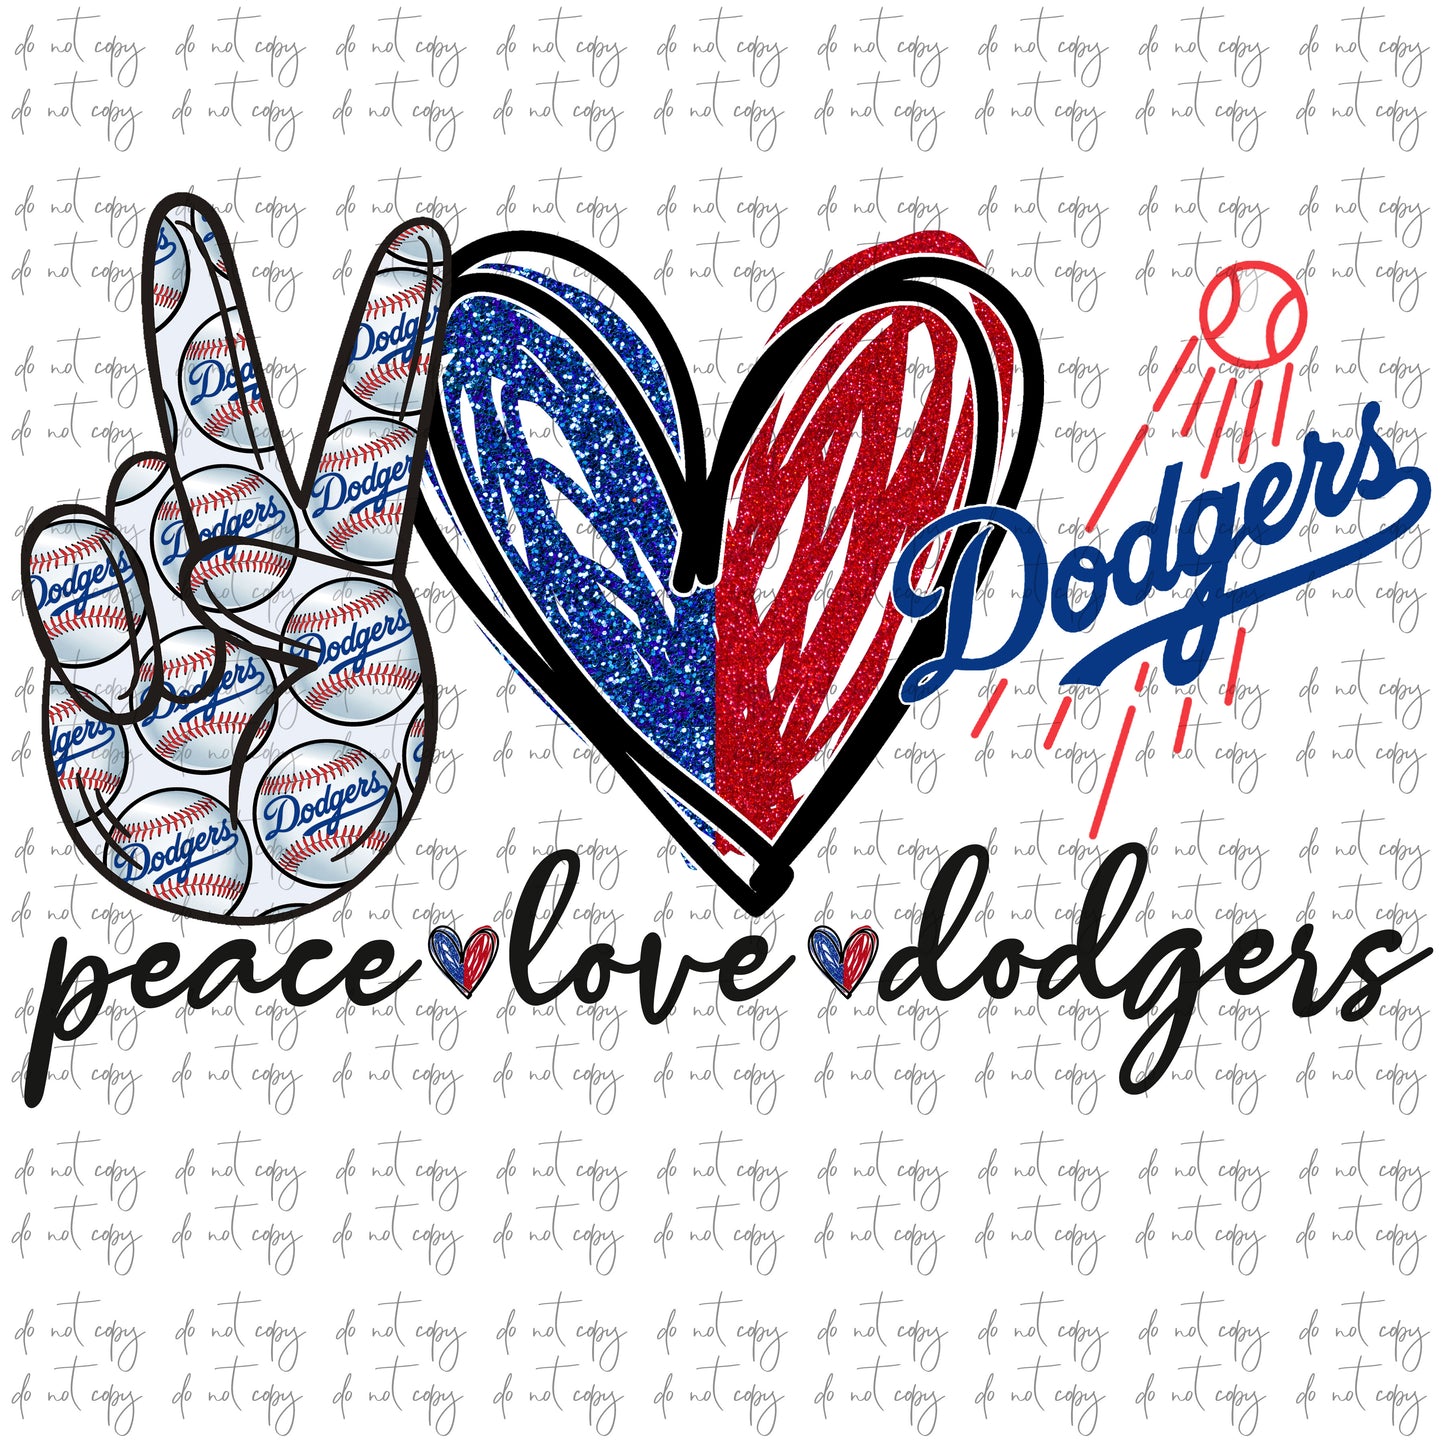 Peace love Dodgers